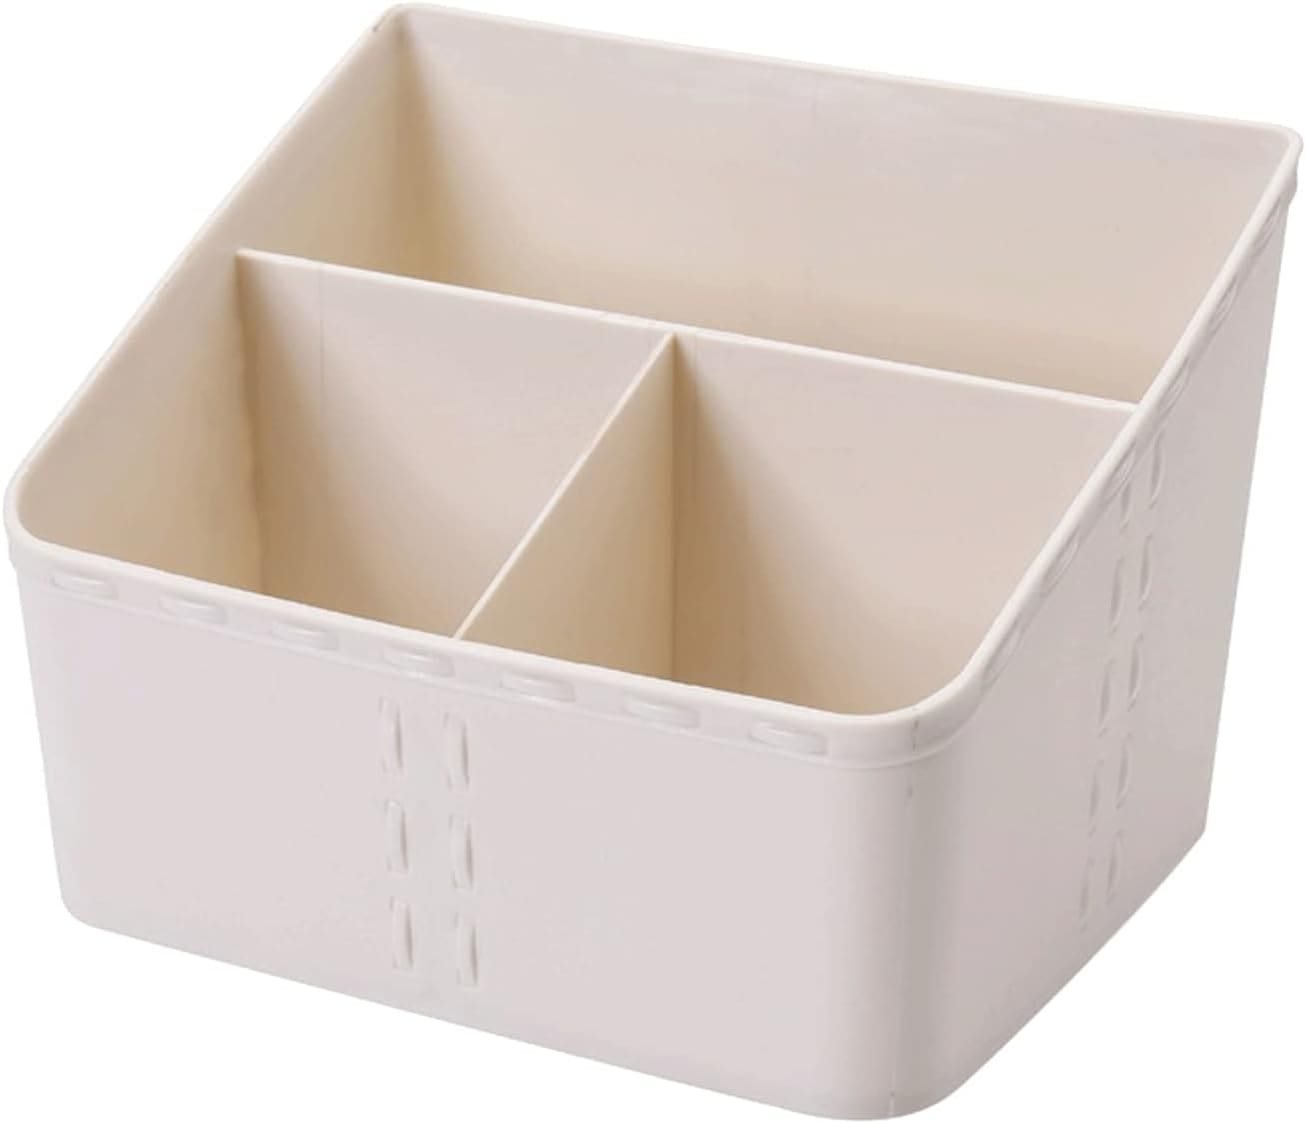 Desktop Sundries Storage Box, 3 Compartment Tableware Organizer, Multifunctional Plastic Storage Container, Drawer Home Office Organizer, Kitchen Bathroom Storage Box